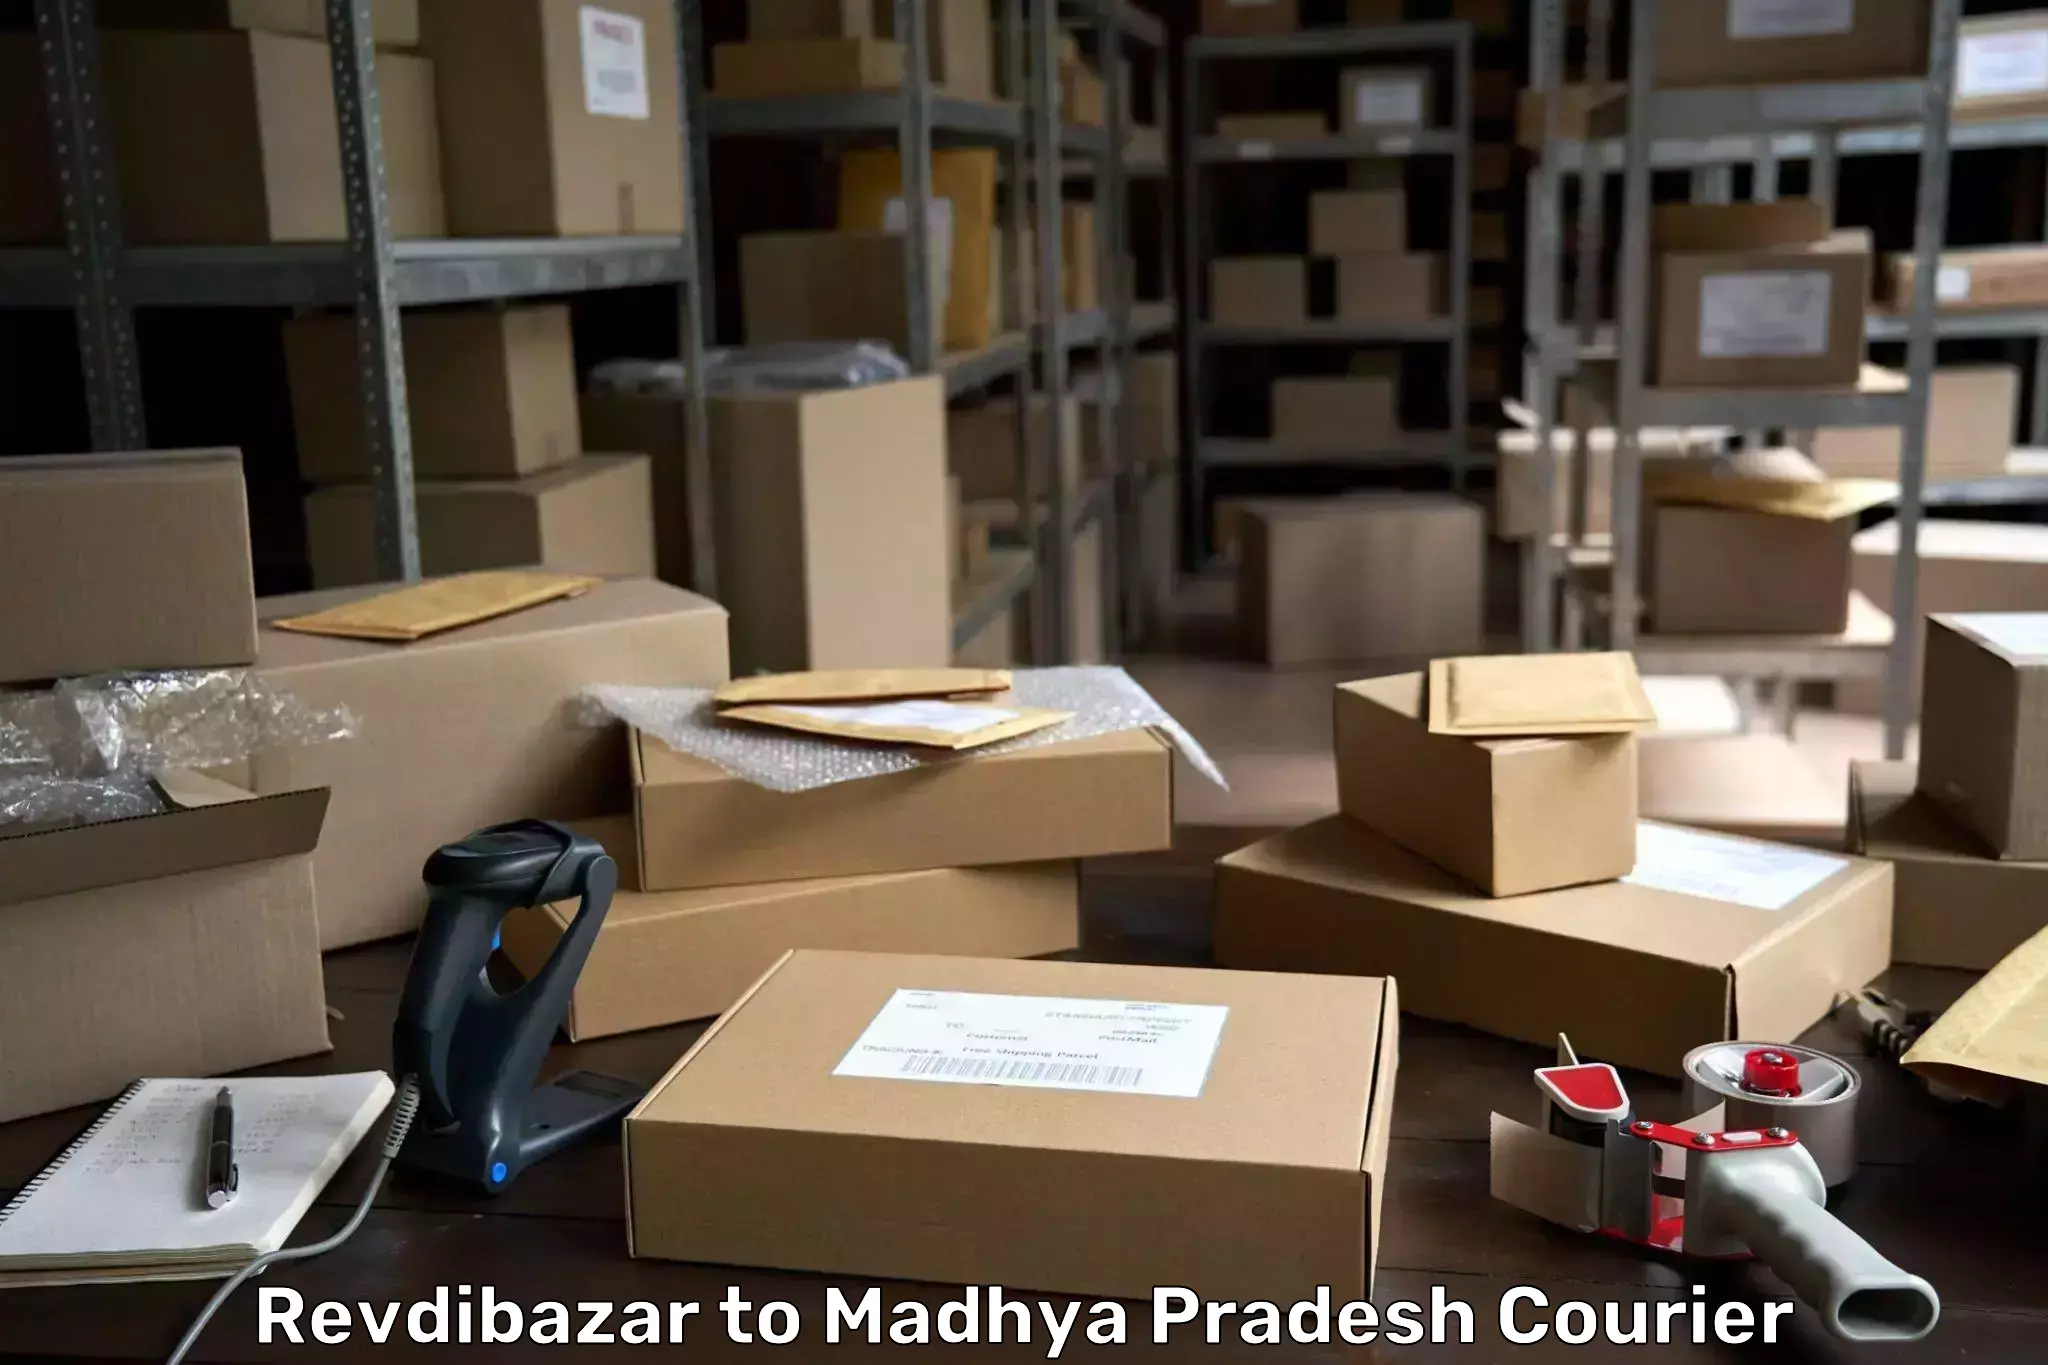 Express courier facilities Revdibazar to Shujalpur